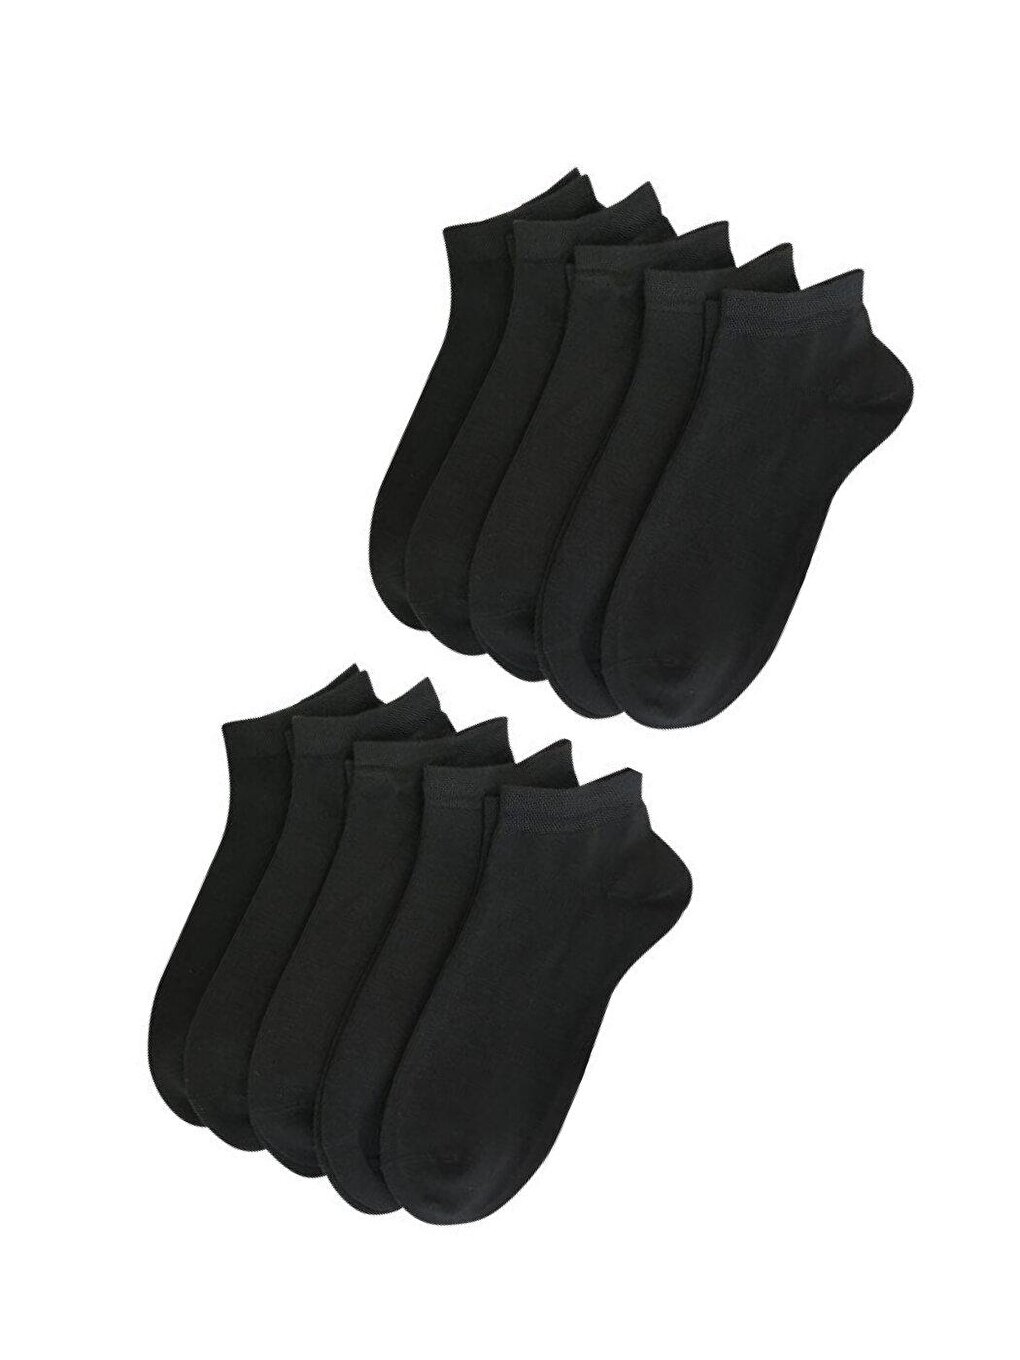 Носки короткие женские бесшовные бамбуковые черные 10шт ÇORAP ÇEKMECESİ носки женские короткие бамбуковые